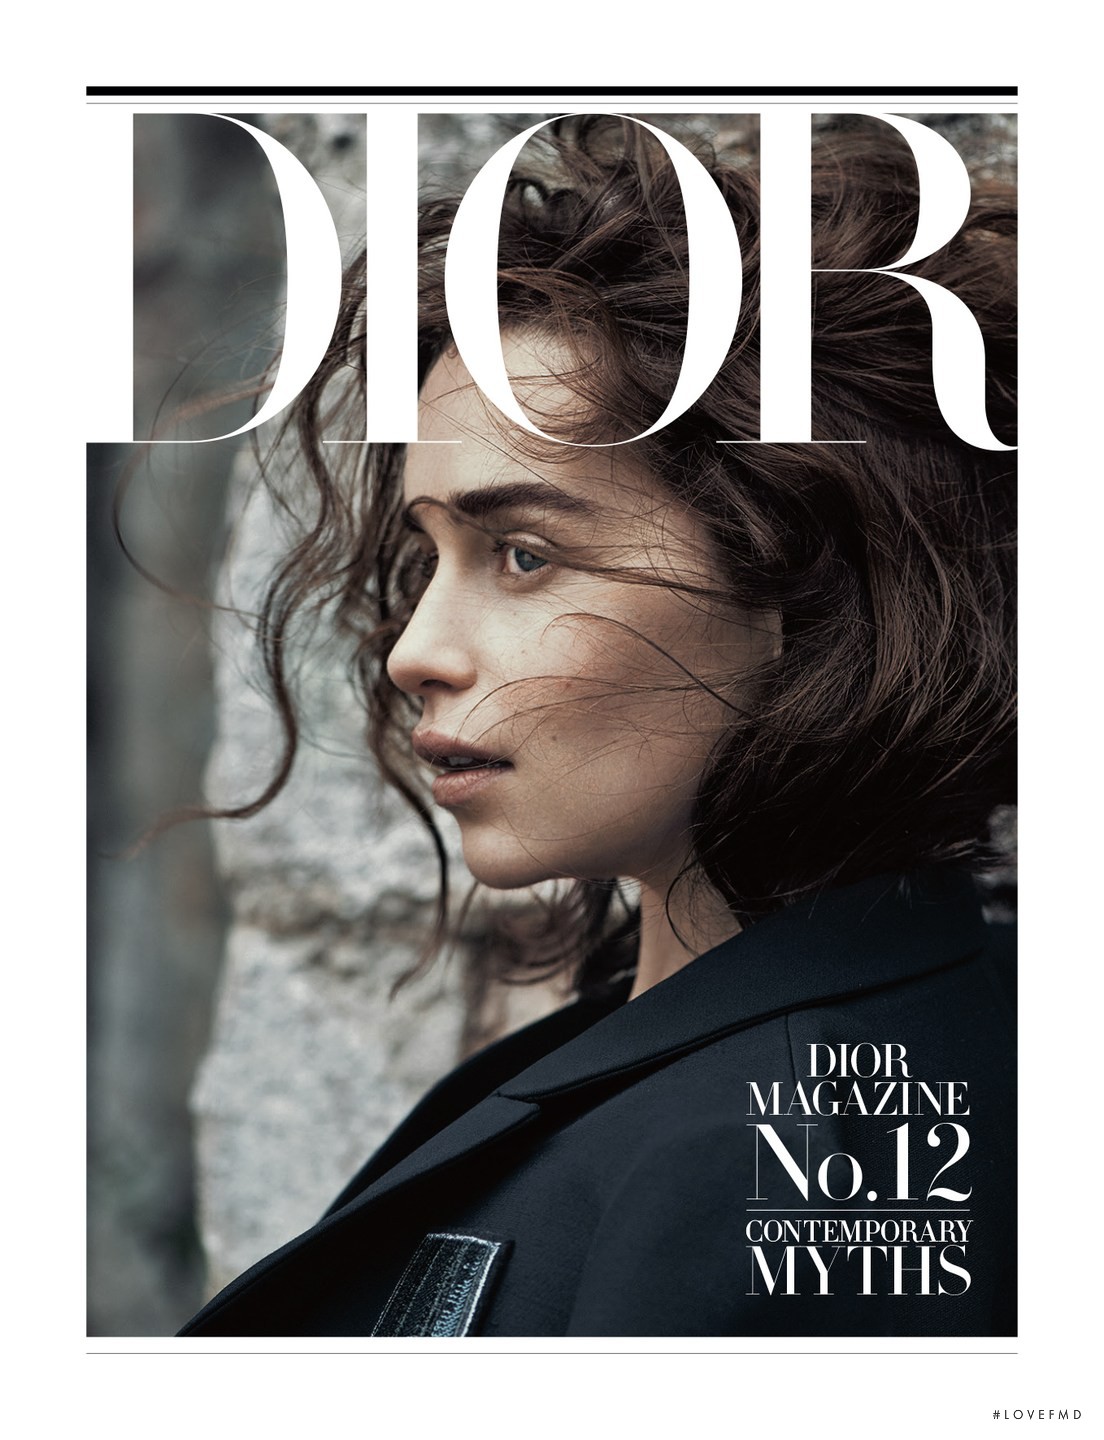 Magazine 12. Диор обложка журнала. Dior обложки журналов. Обложка журнала Vogue. Журнал Vogue обложка Dior.